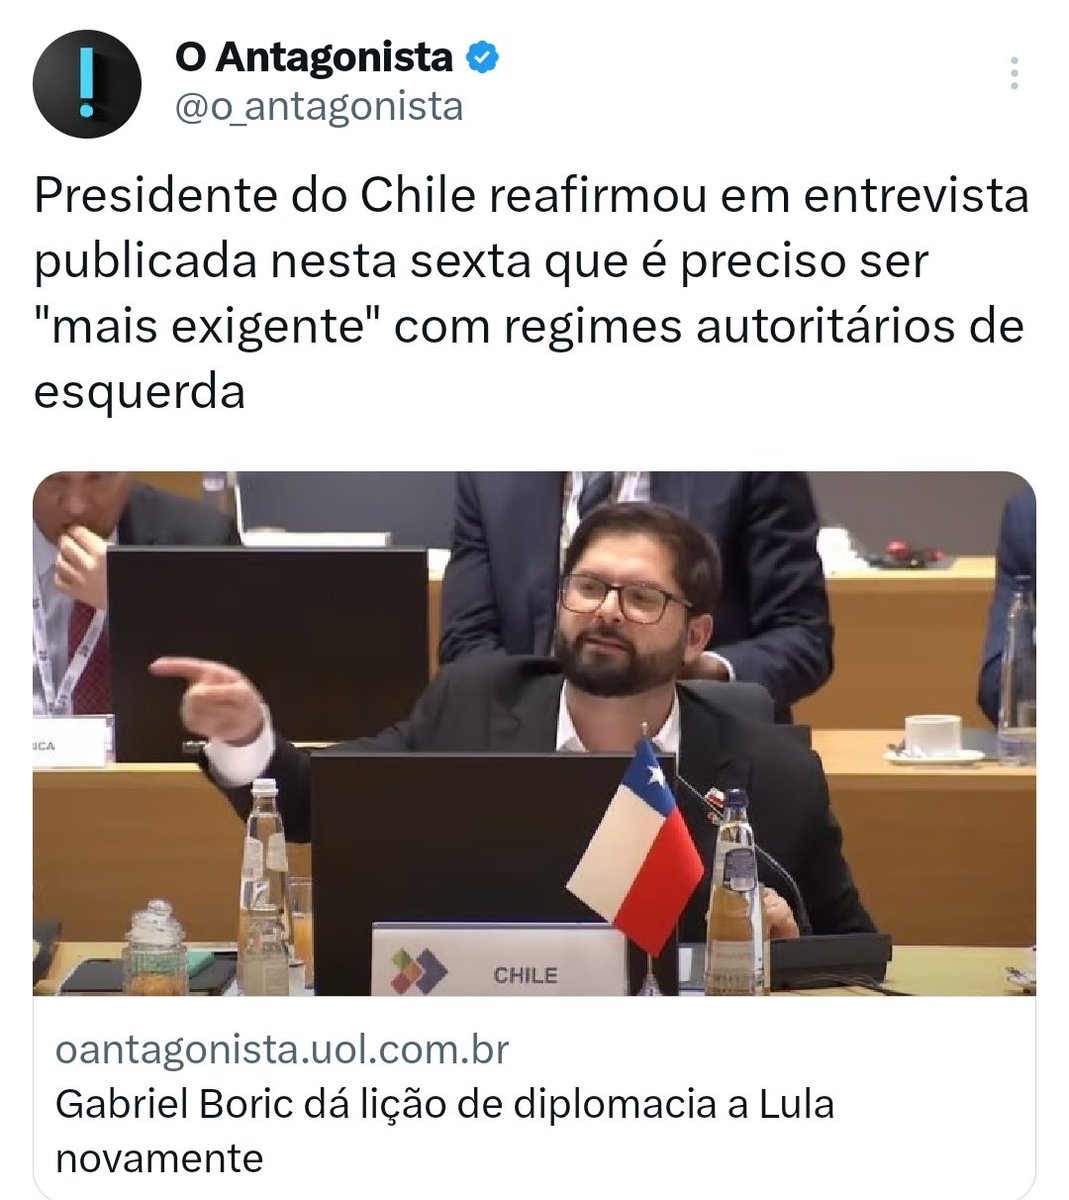 Lula tomando invertida do esquerdista extremista, Boric. Meu Deus, daquele extremista!😬